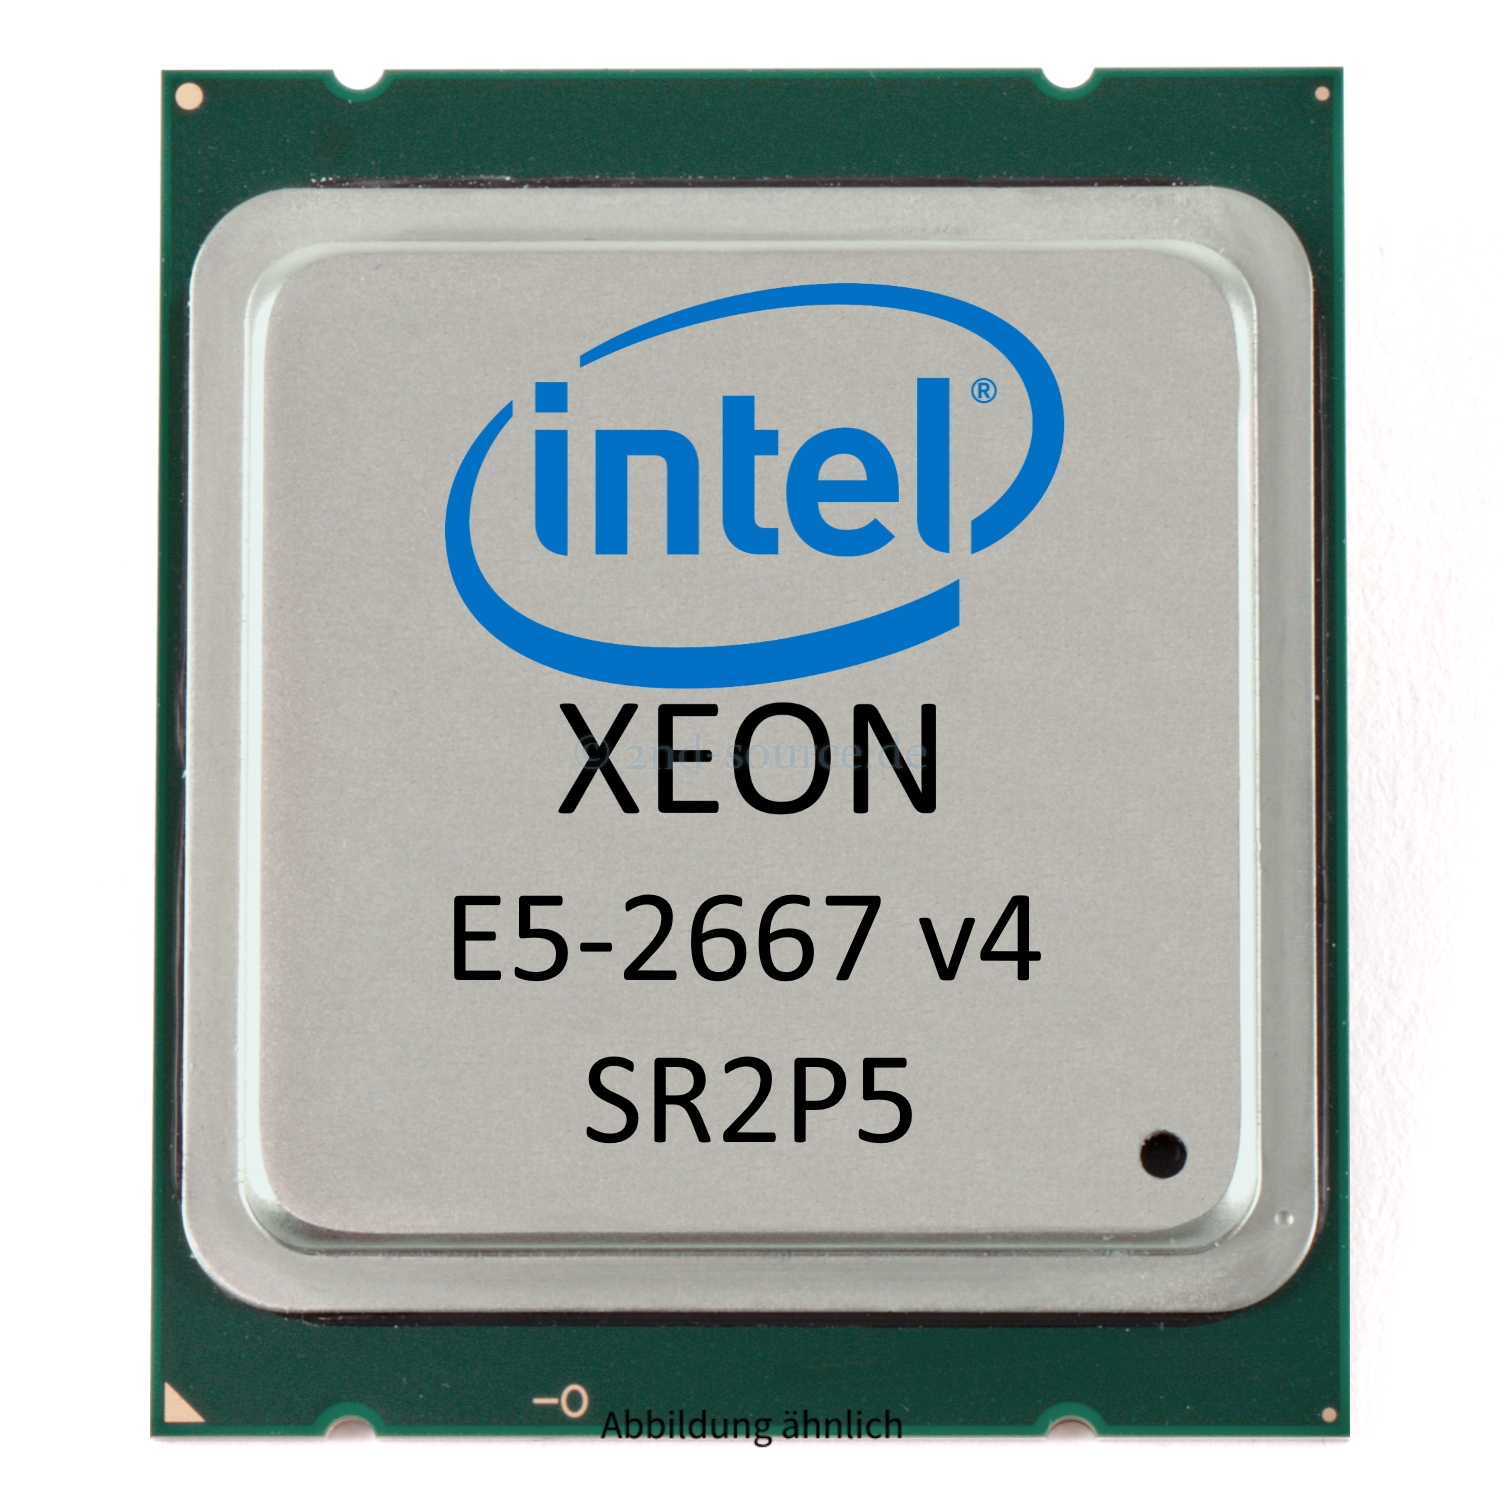 Intel Xeon E5-2667 v4 3.20GHz 25MB 8-Core CPU 135W SR2P5 CM8066002041900